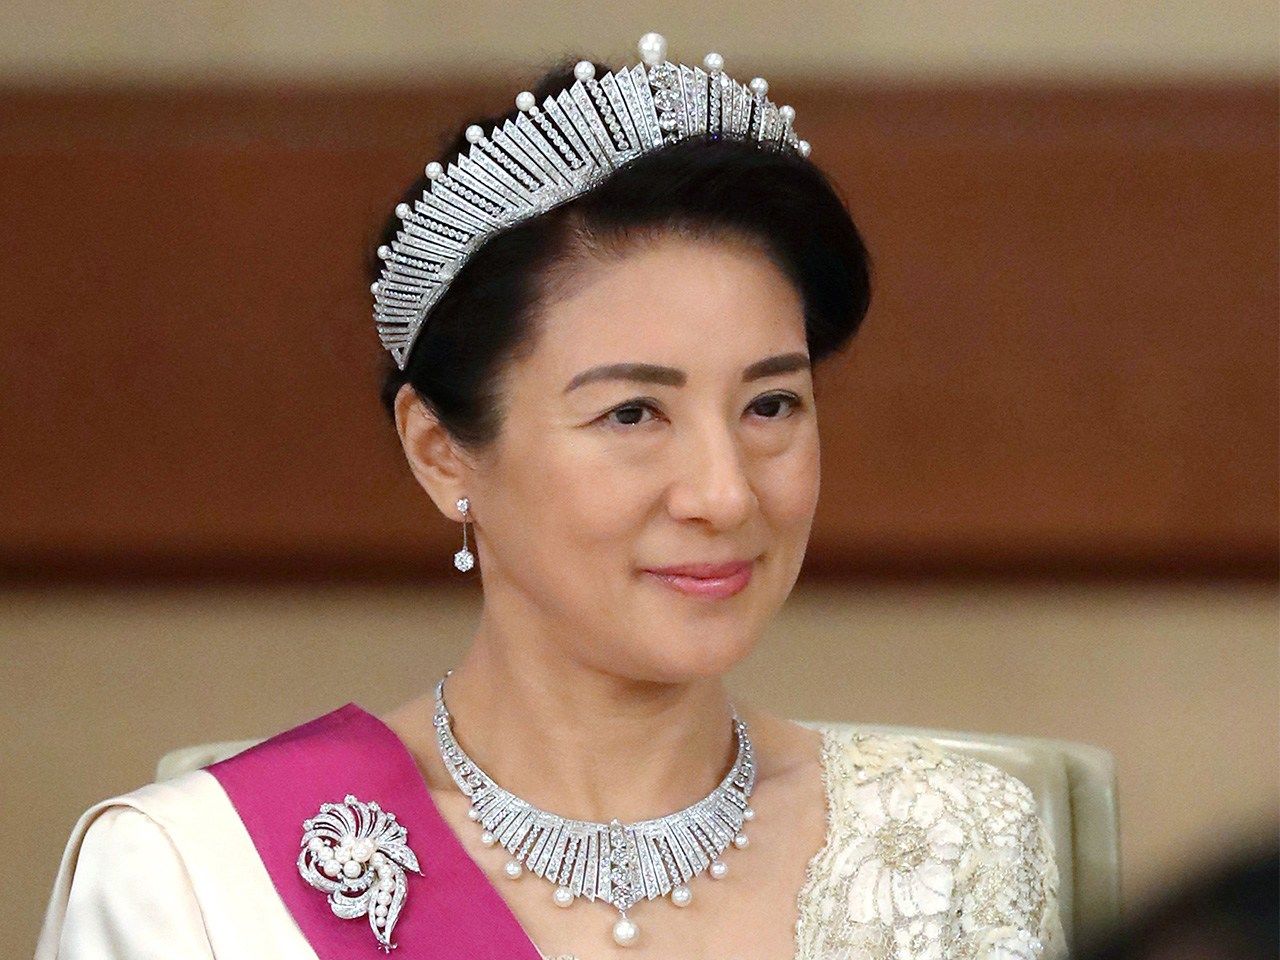 La entonces princesa heredera Masako en el banquete imperial de bienvenida a los reyes de Bélgica el 11 de octubre de 2016. Palacio Imperial, Tokio. (Fotografía oficial / Jiji) 